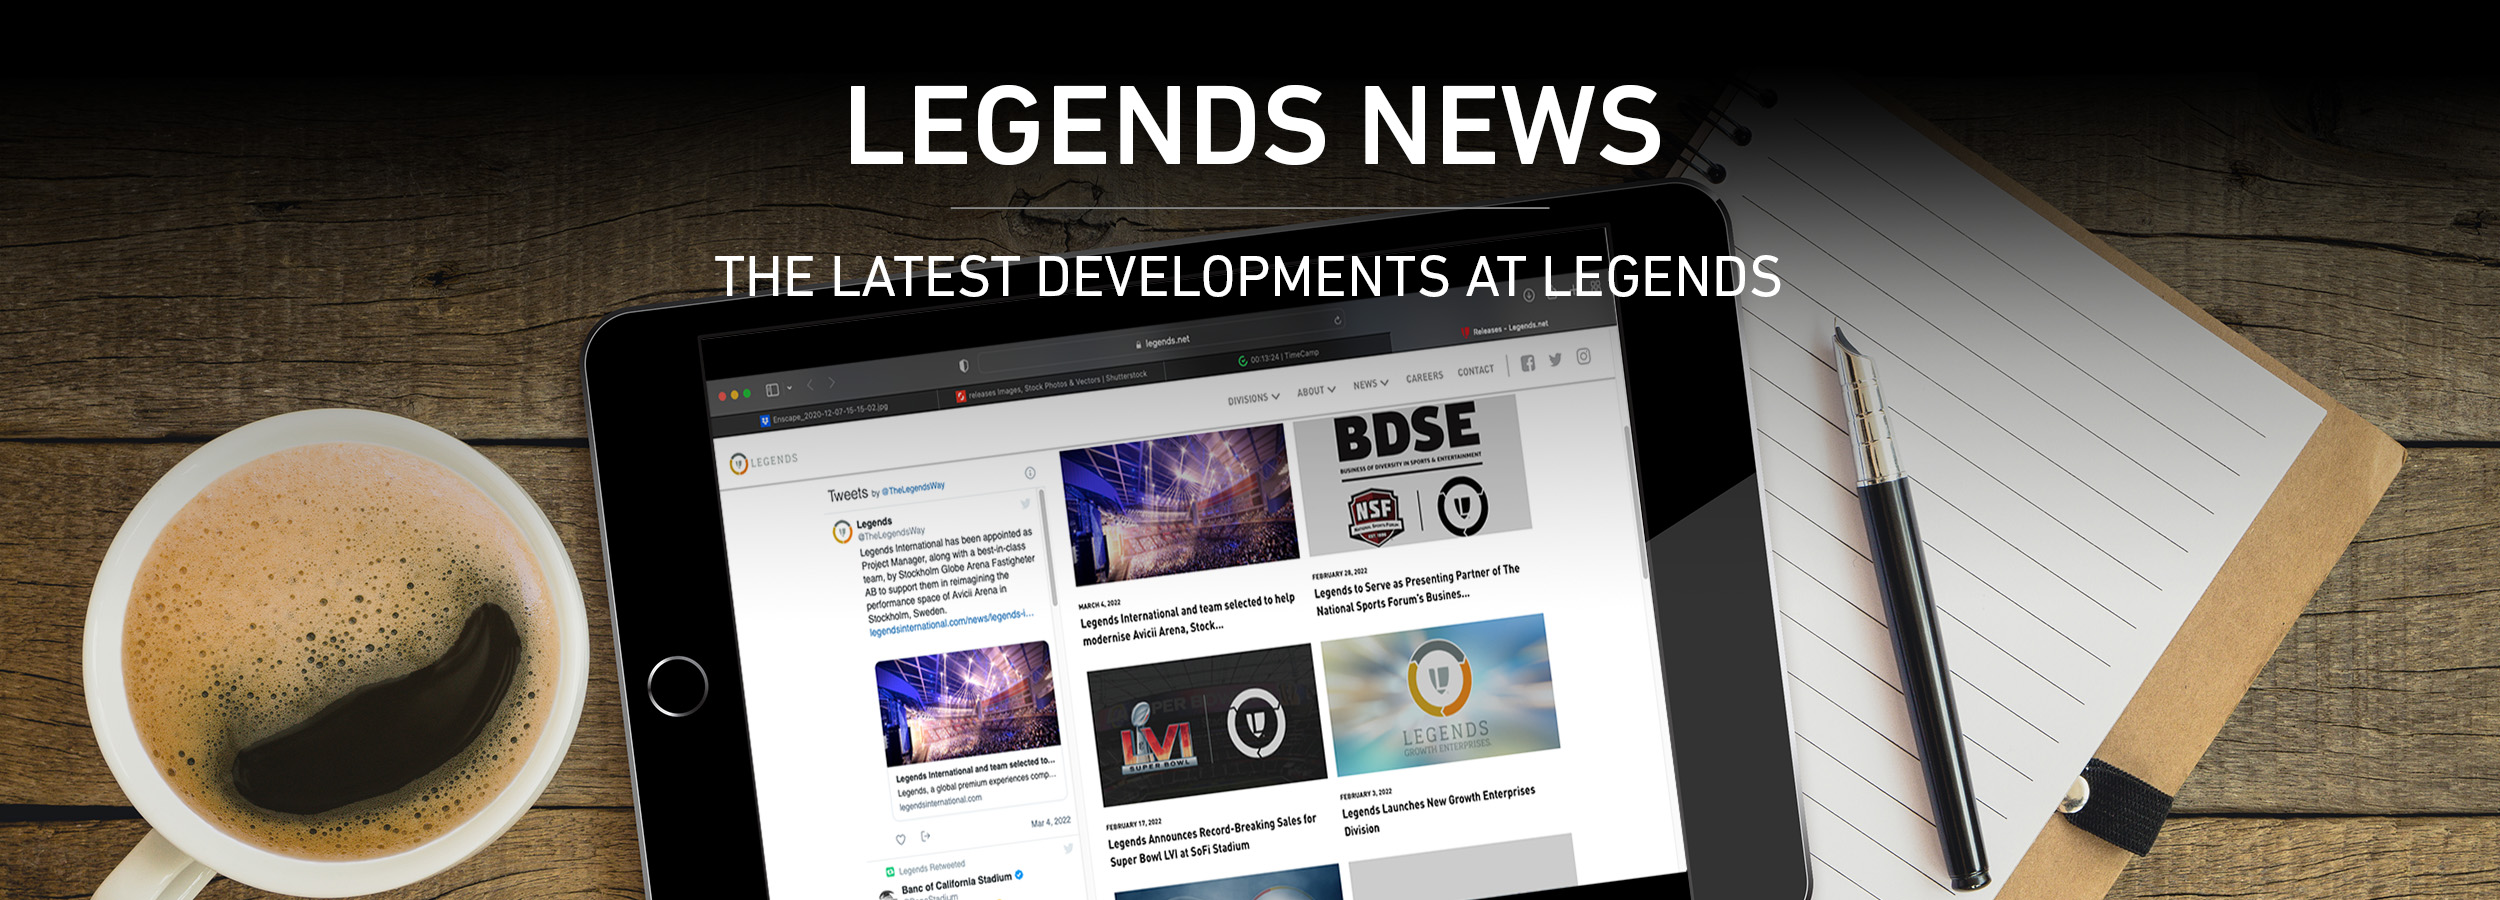 Legends News